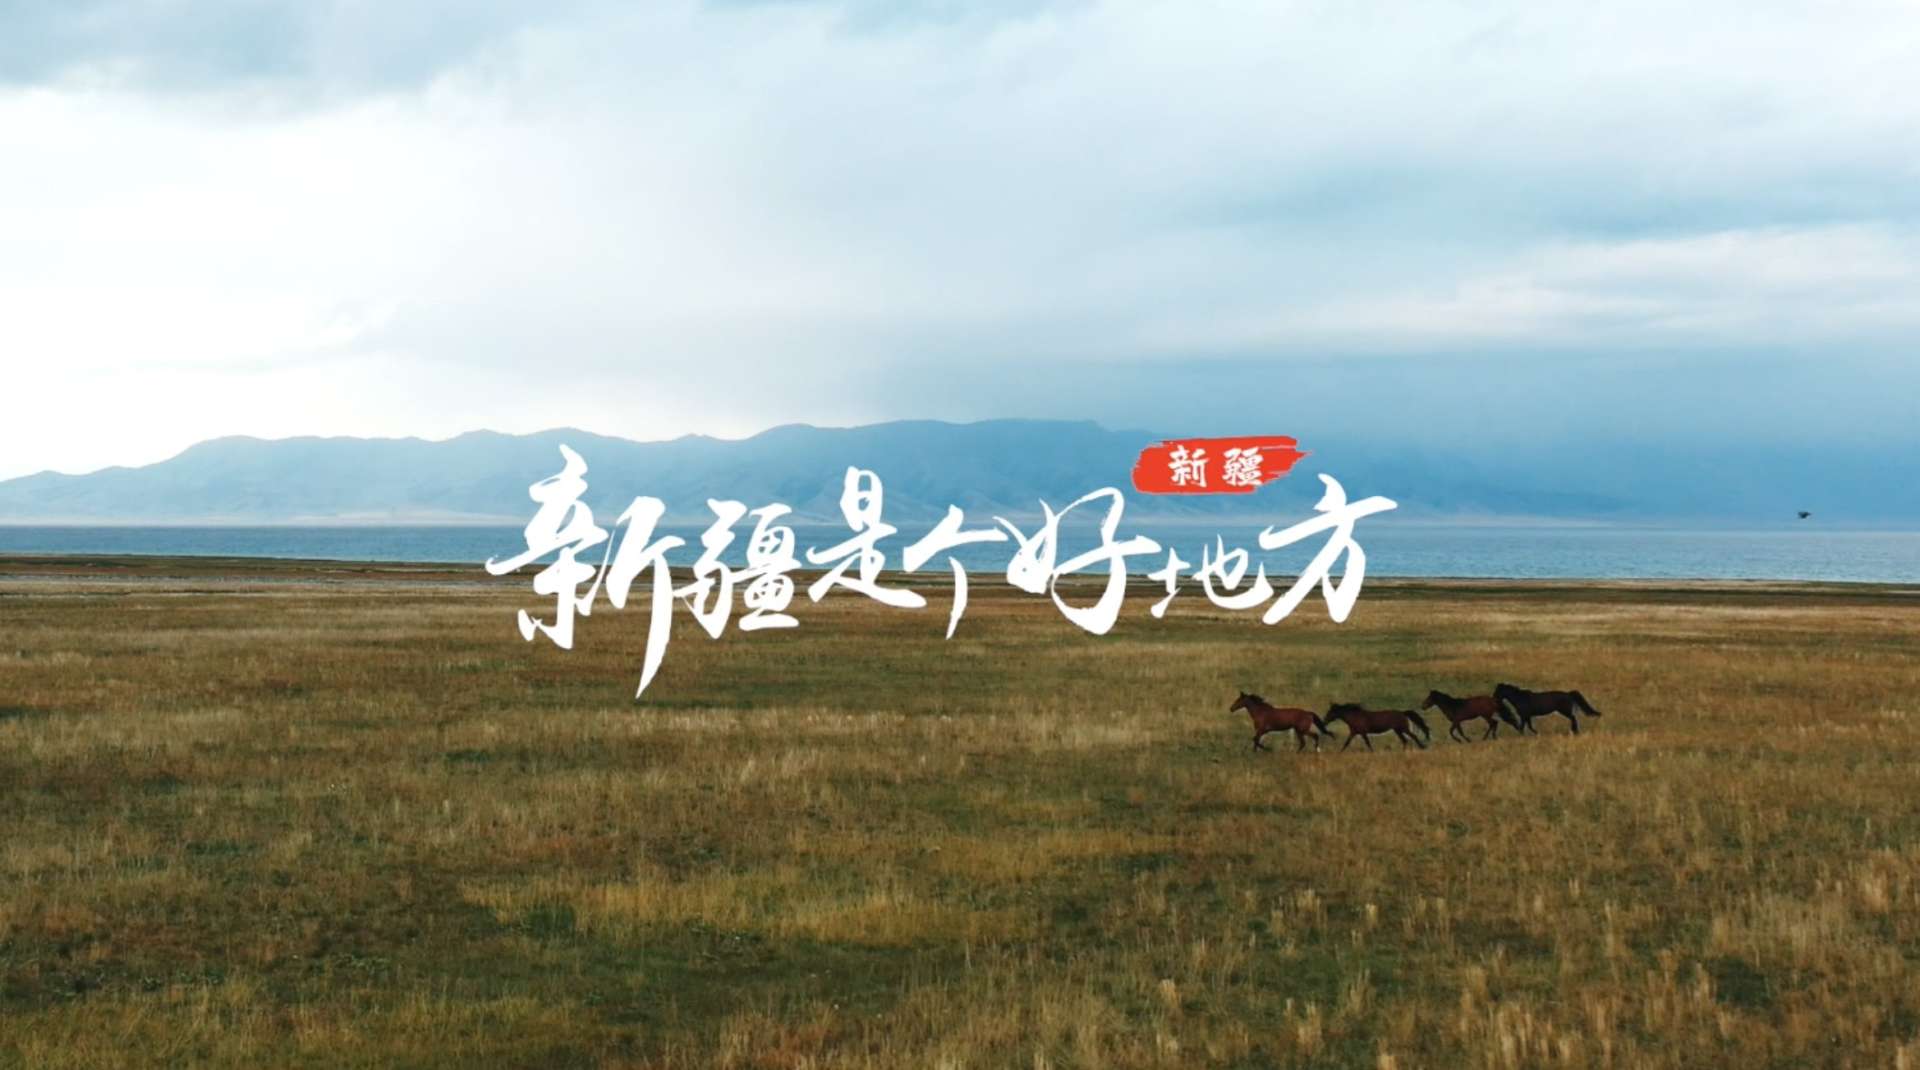 逍遥假期旅行社 全景南北疆14天国列游新疆 宣传片